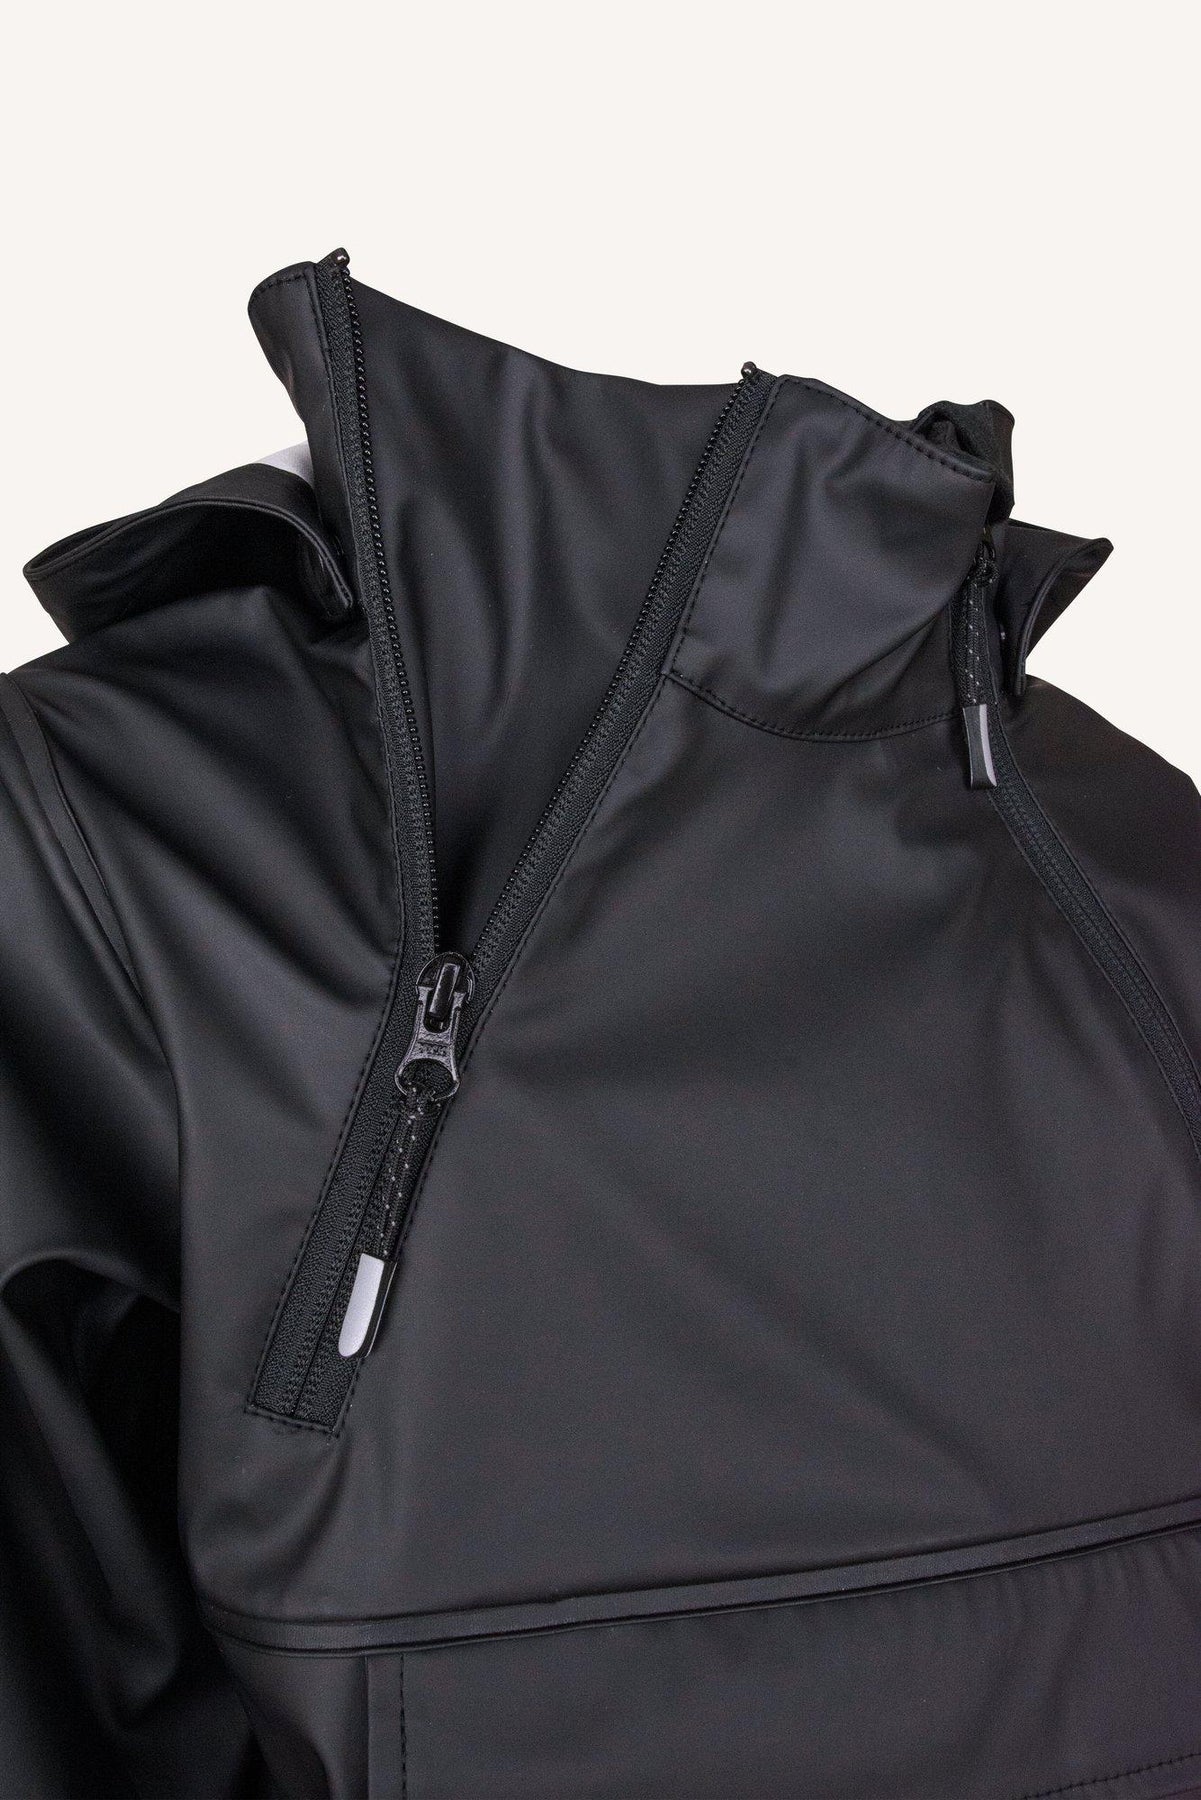 Rockville rain jacket in cool design from Lindberg – Lindberg Sweden